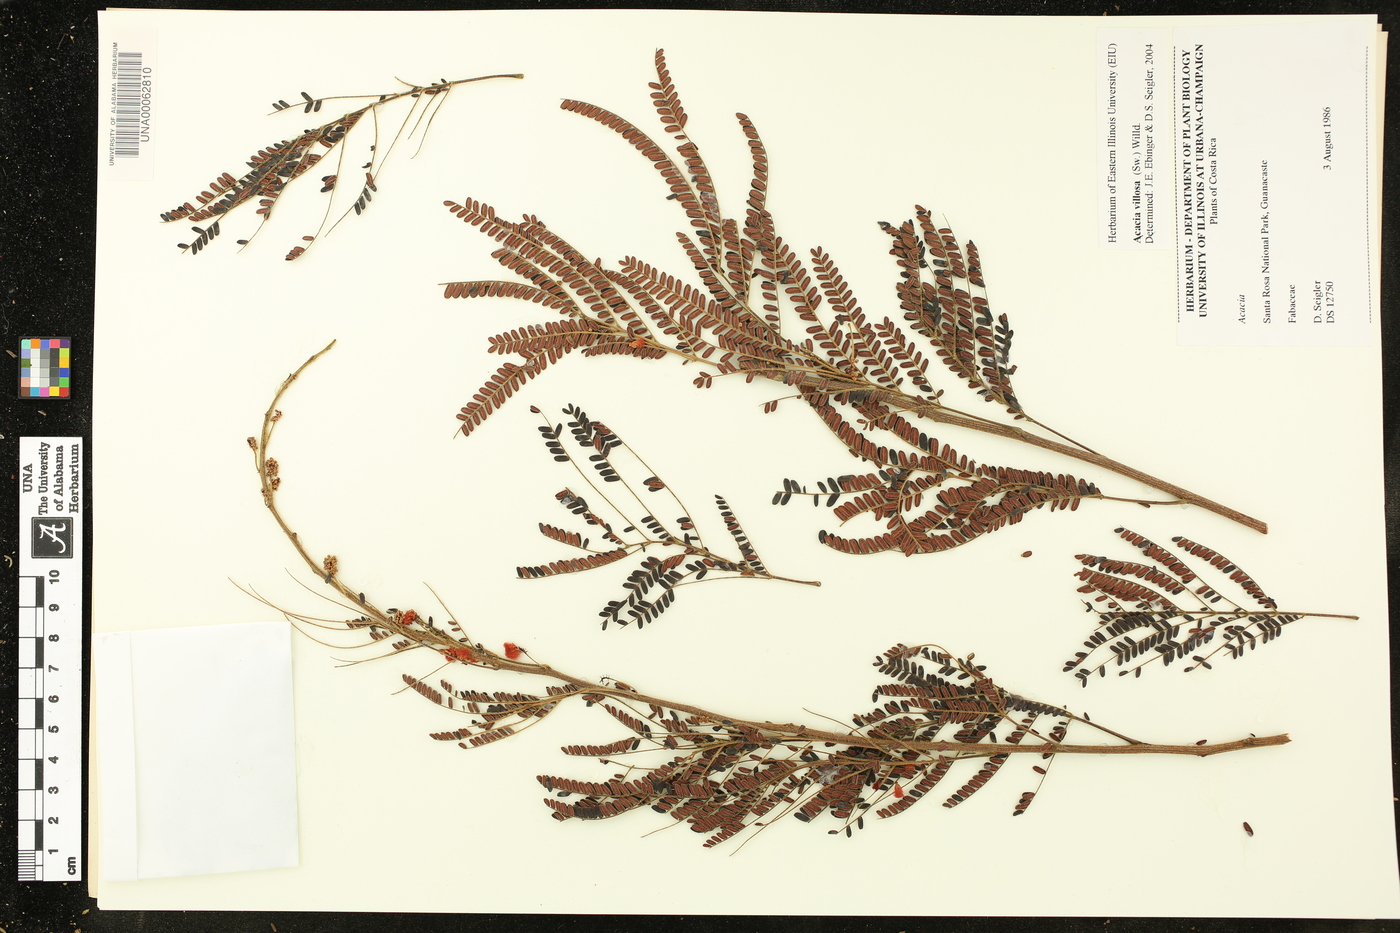 Acacia villosa image